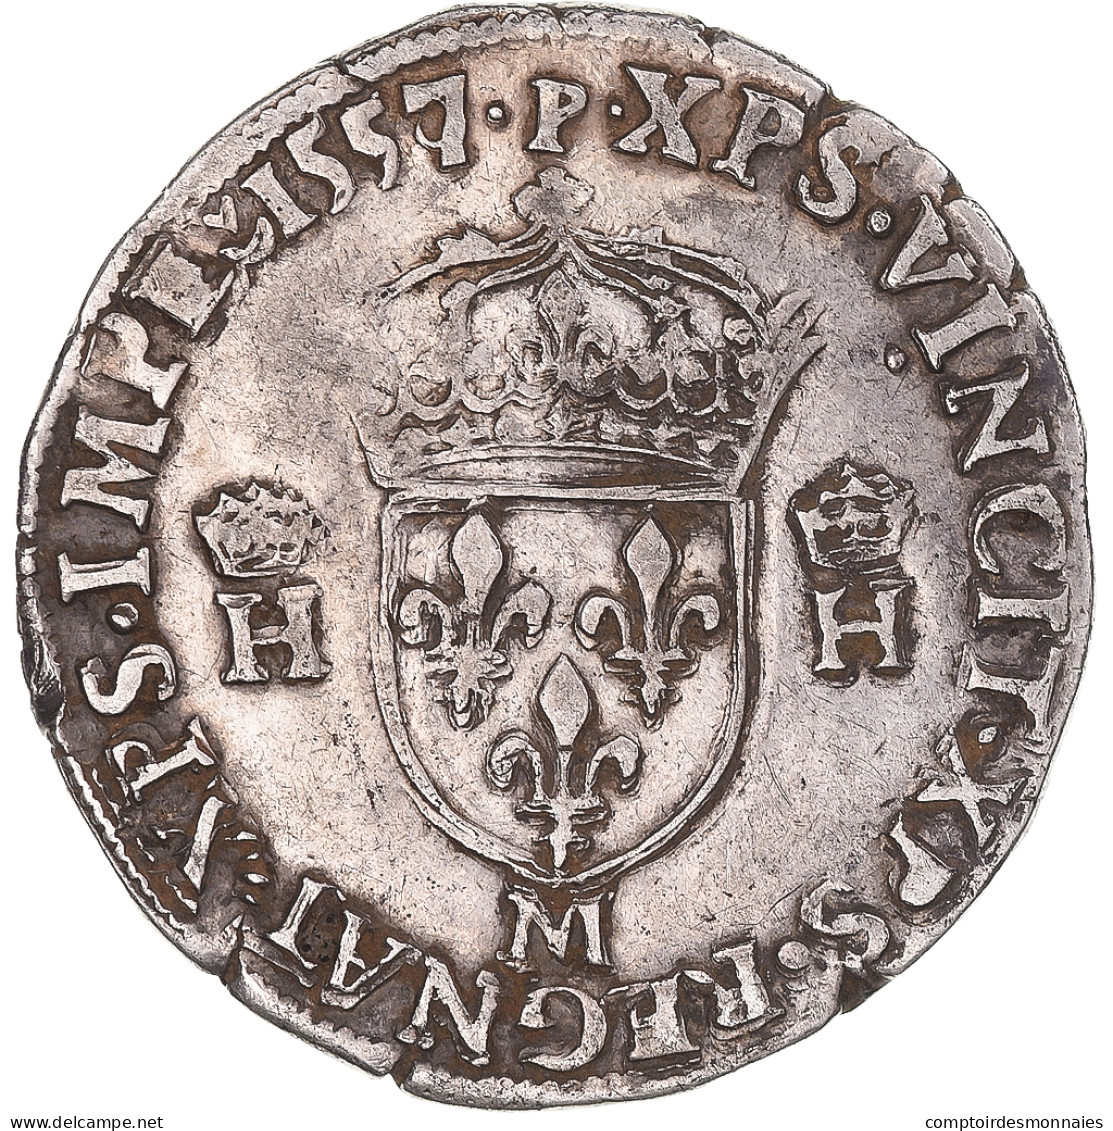 Monnaie, France, Henri II, Teston à La Tête Nue, 1557/6, Toulouse, TTB - 1547-1559 Heinrich II.